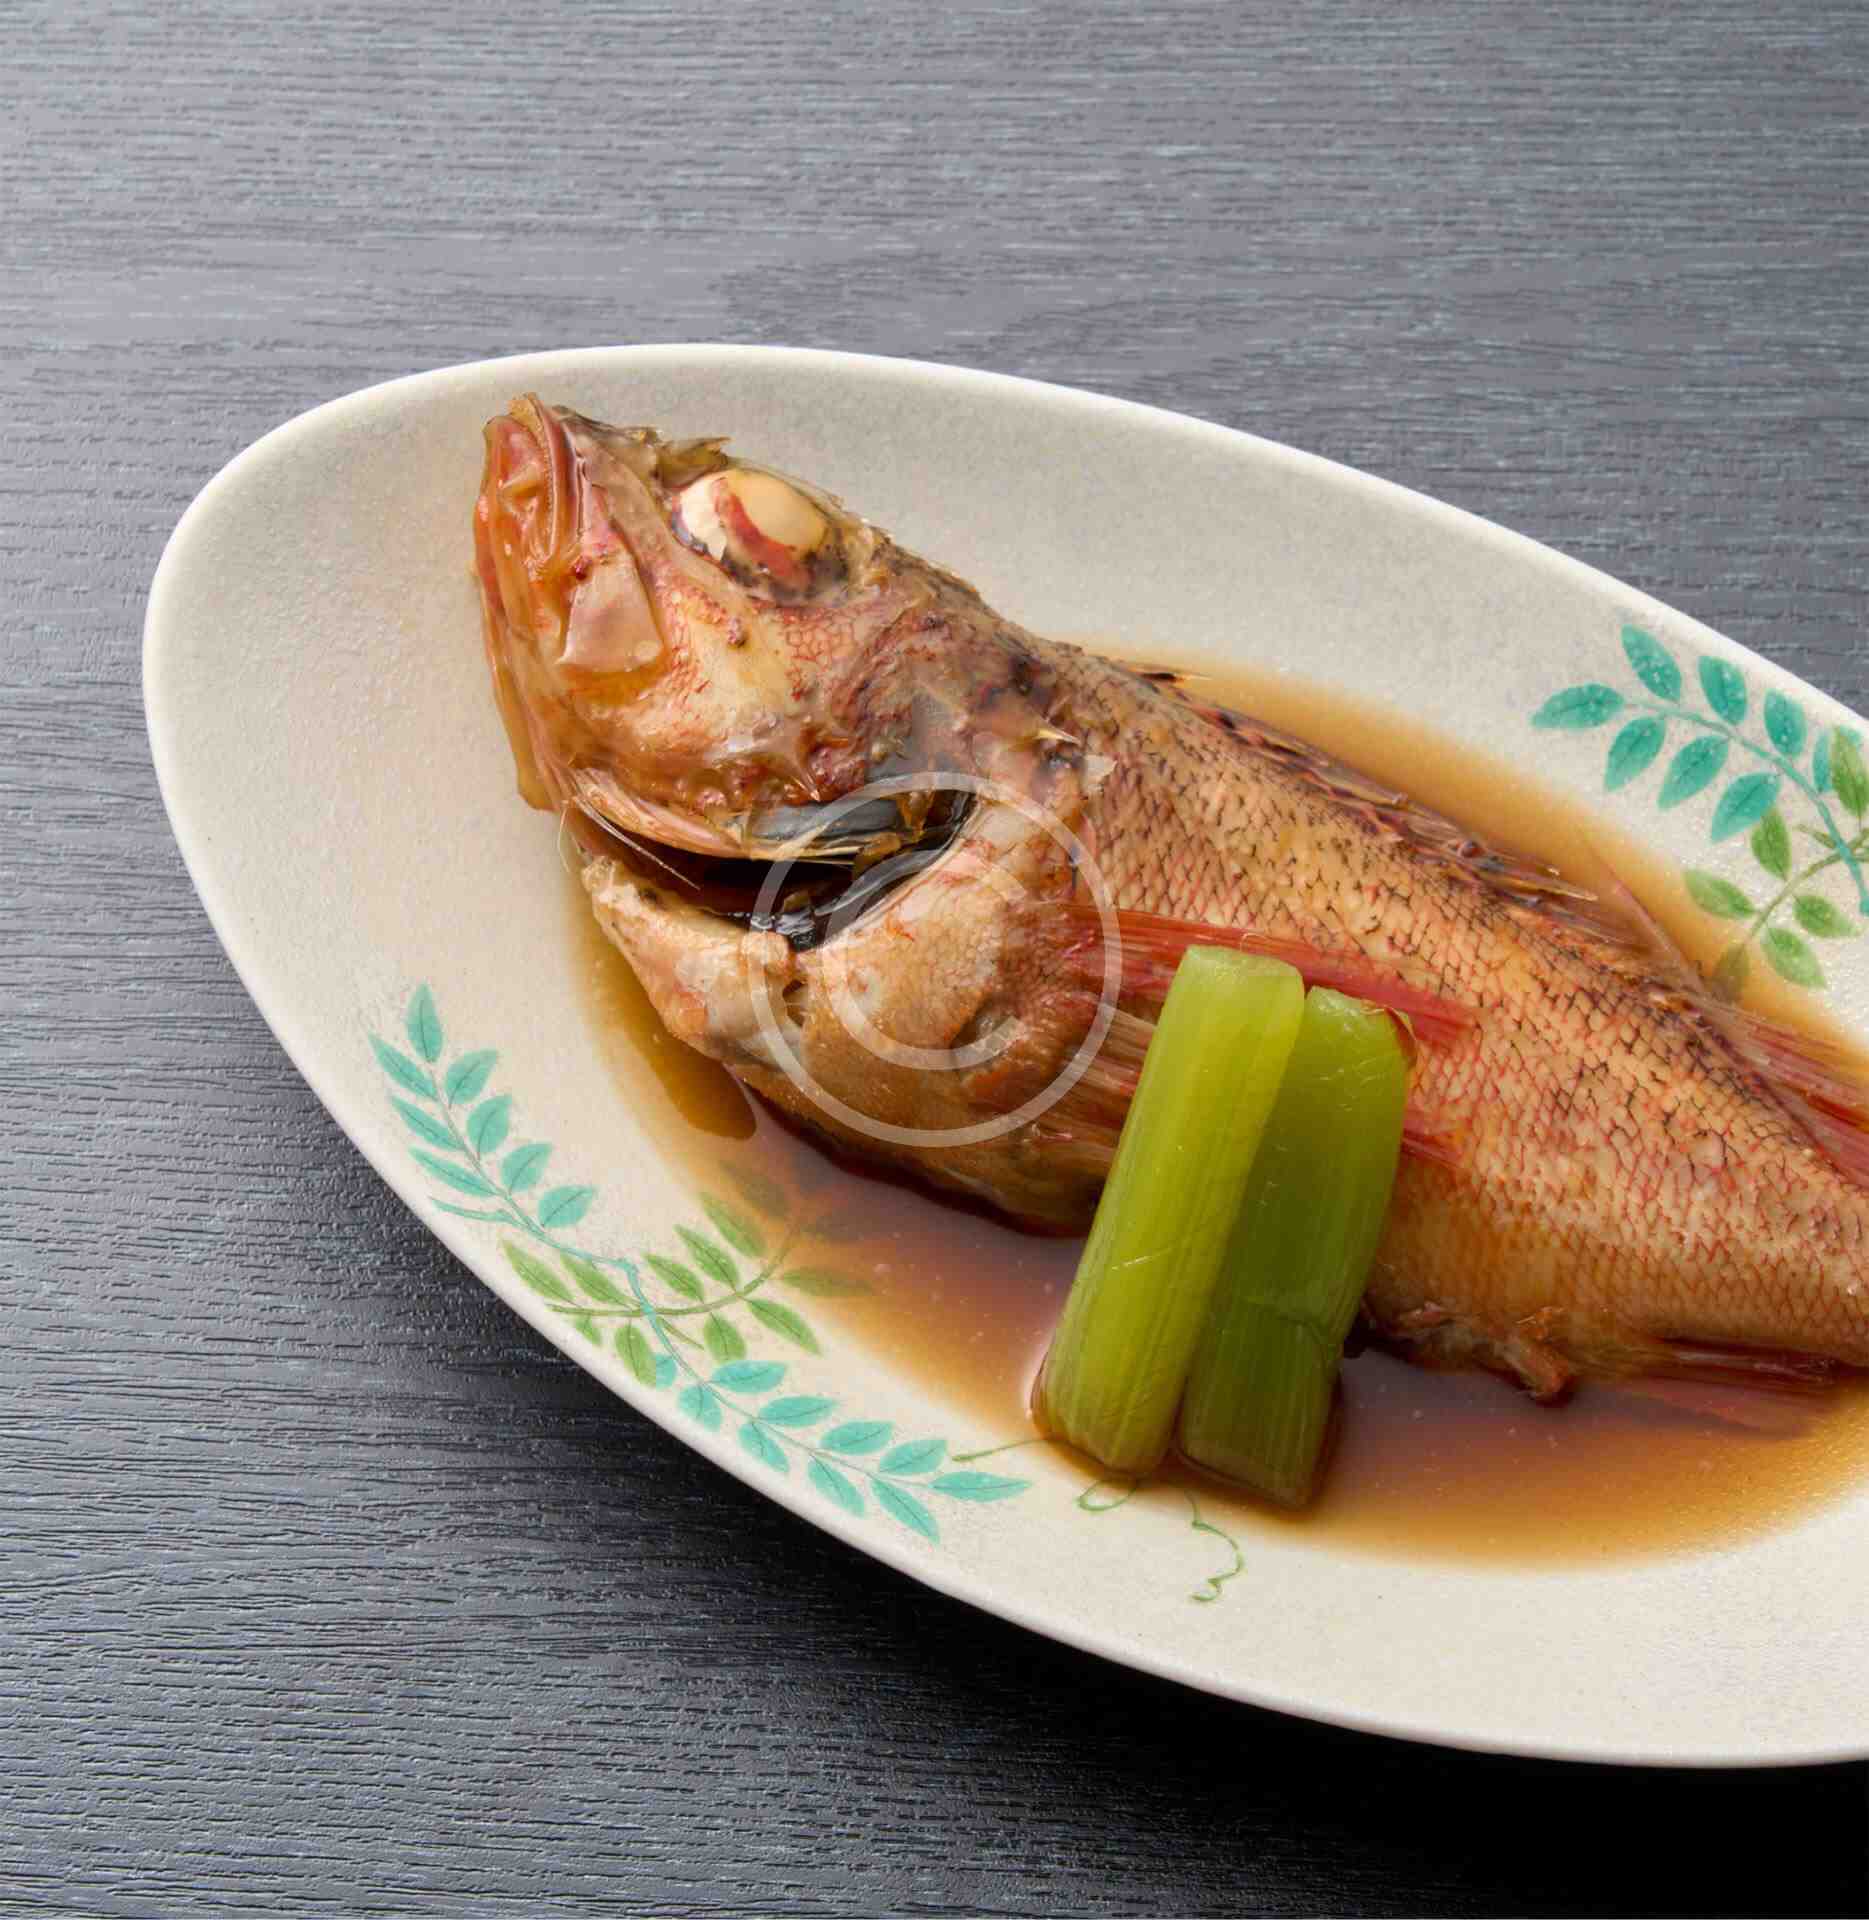 Thai basil fish